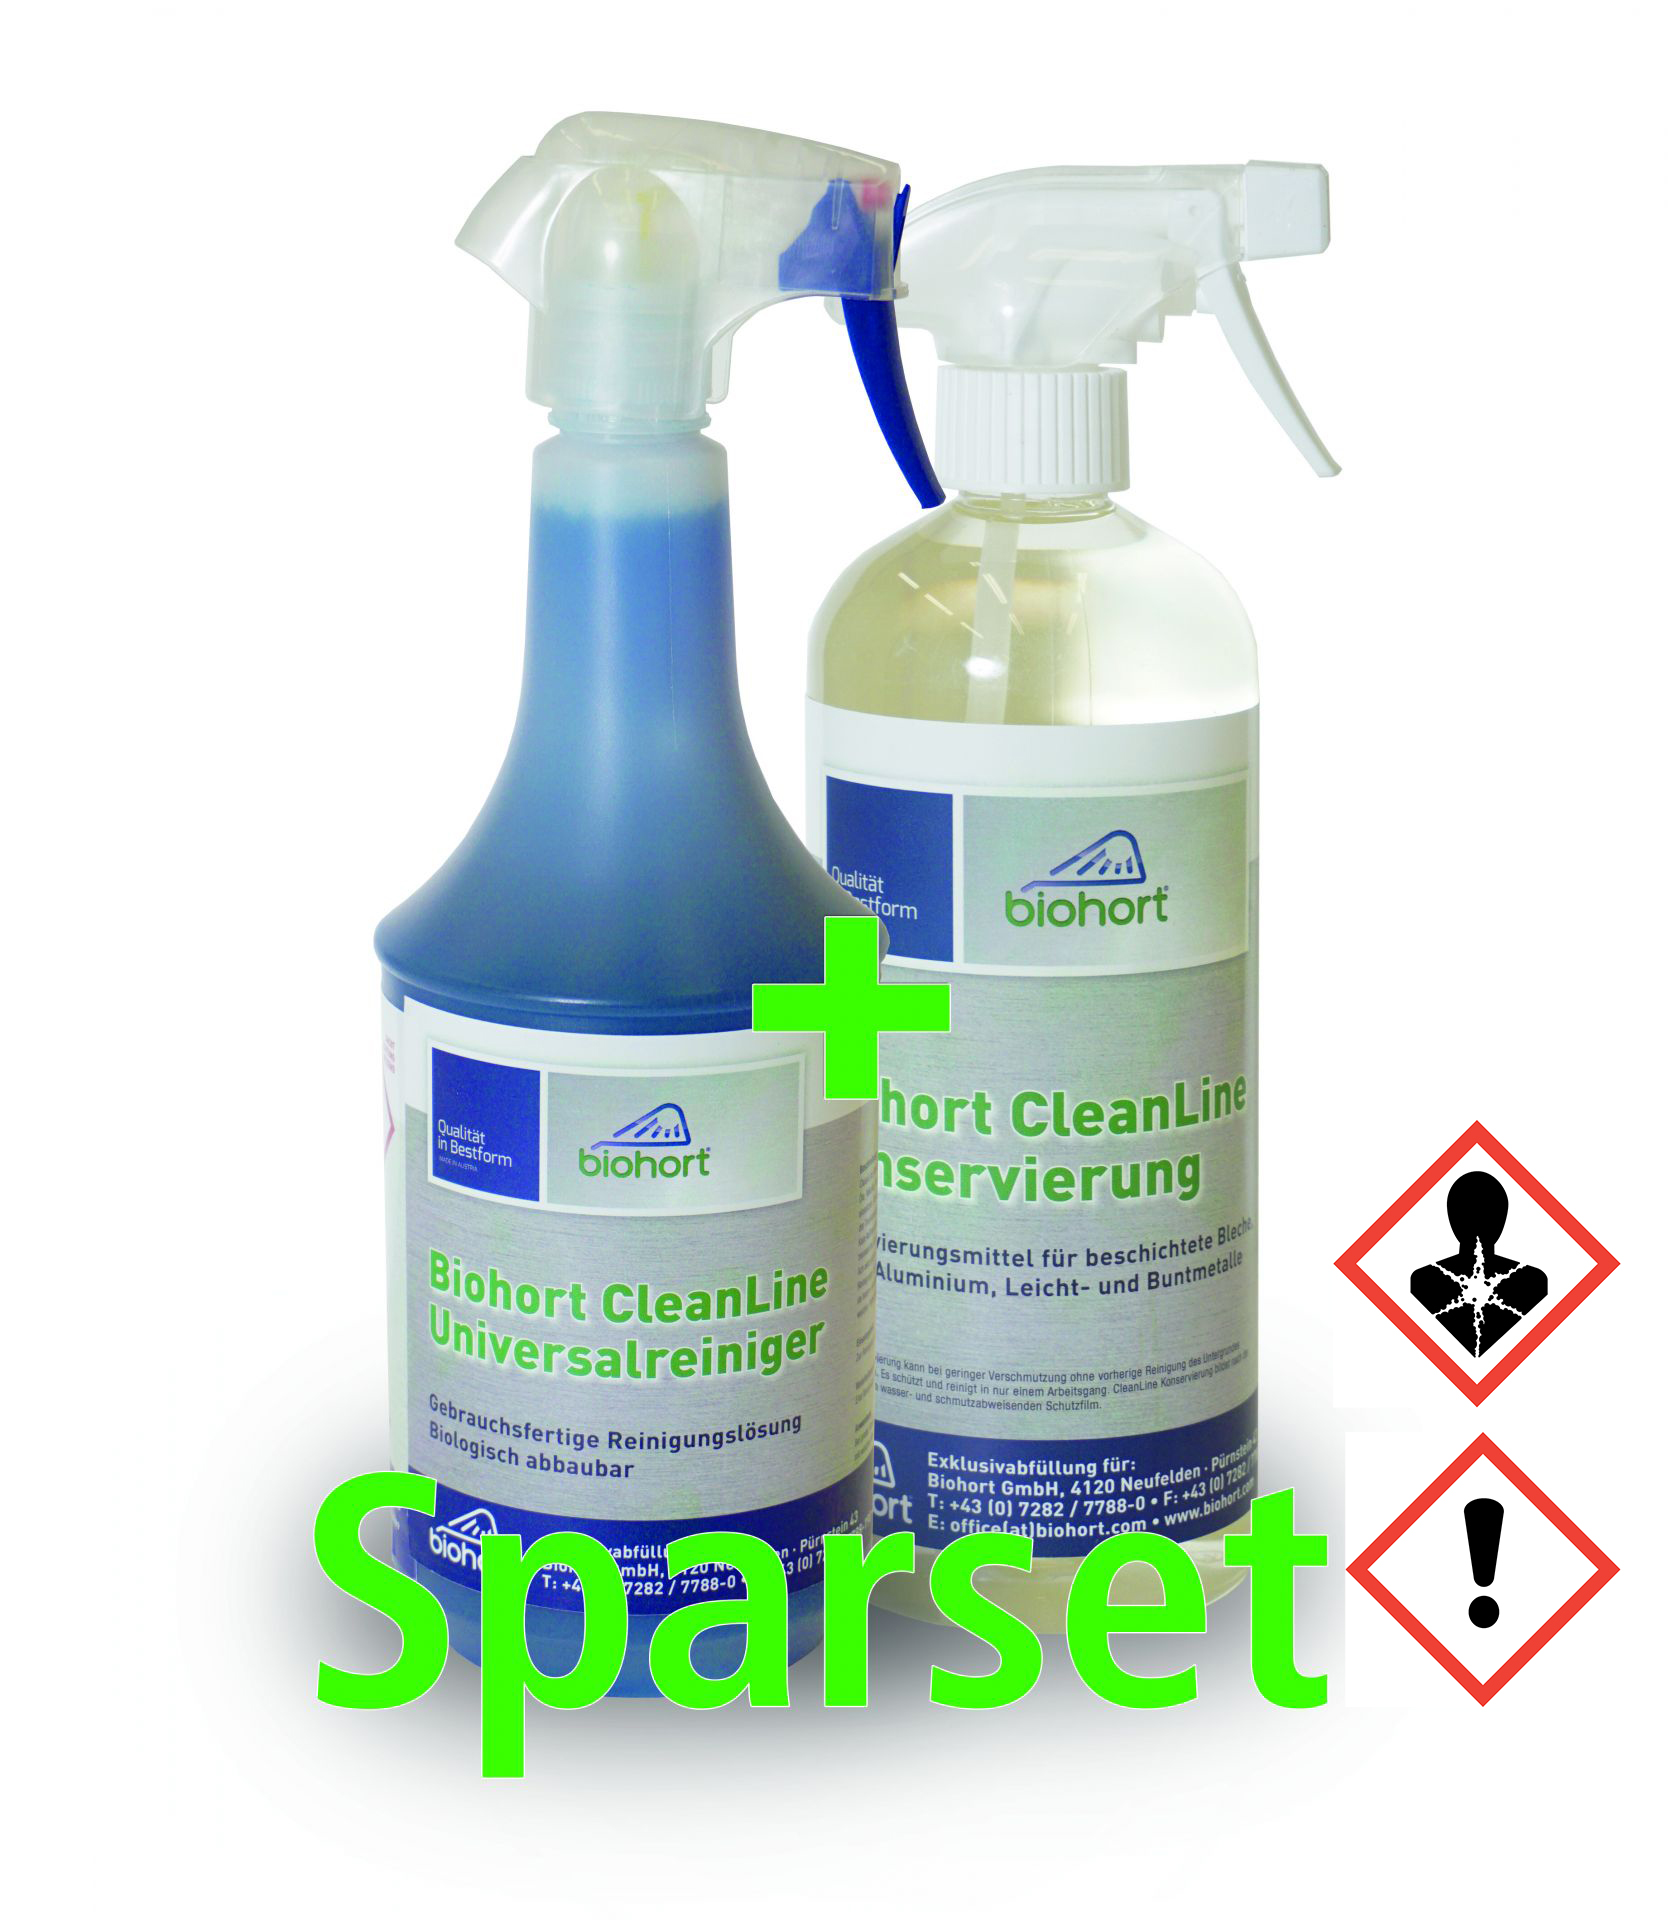 Biohort Cleanline Sparset Universalreiniger 1000 ml & Konservierung 750 ml